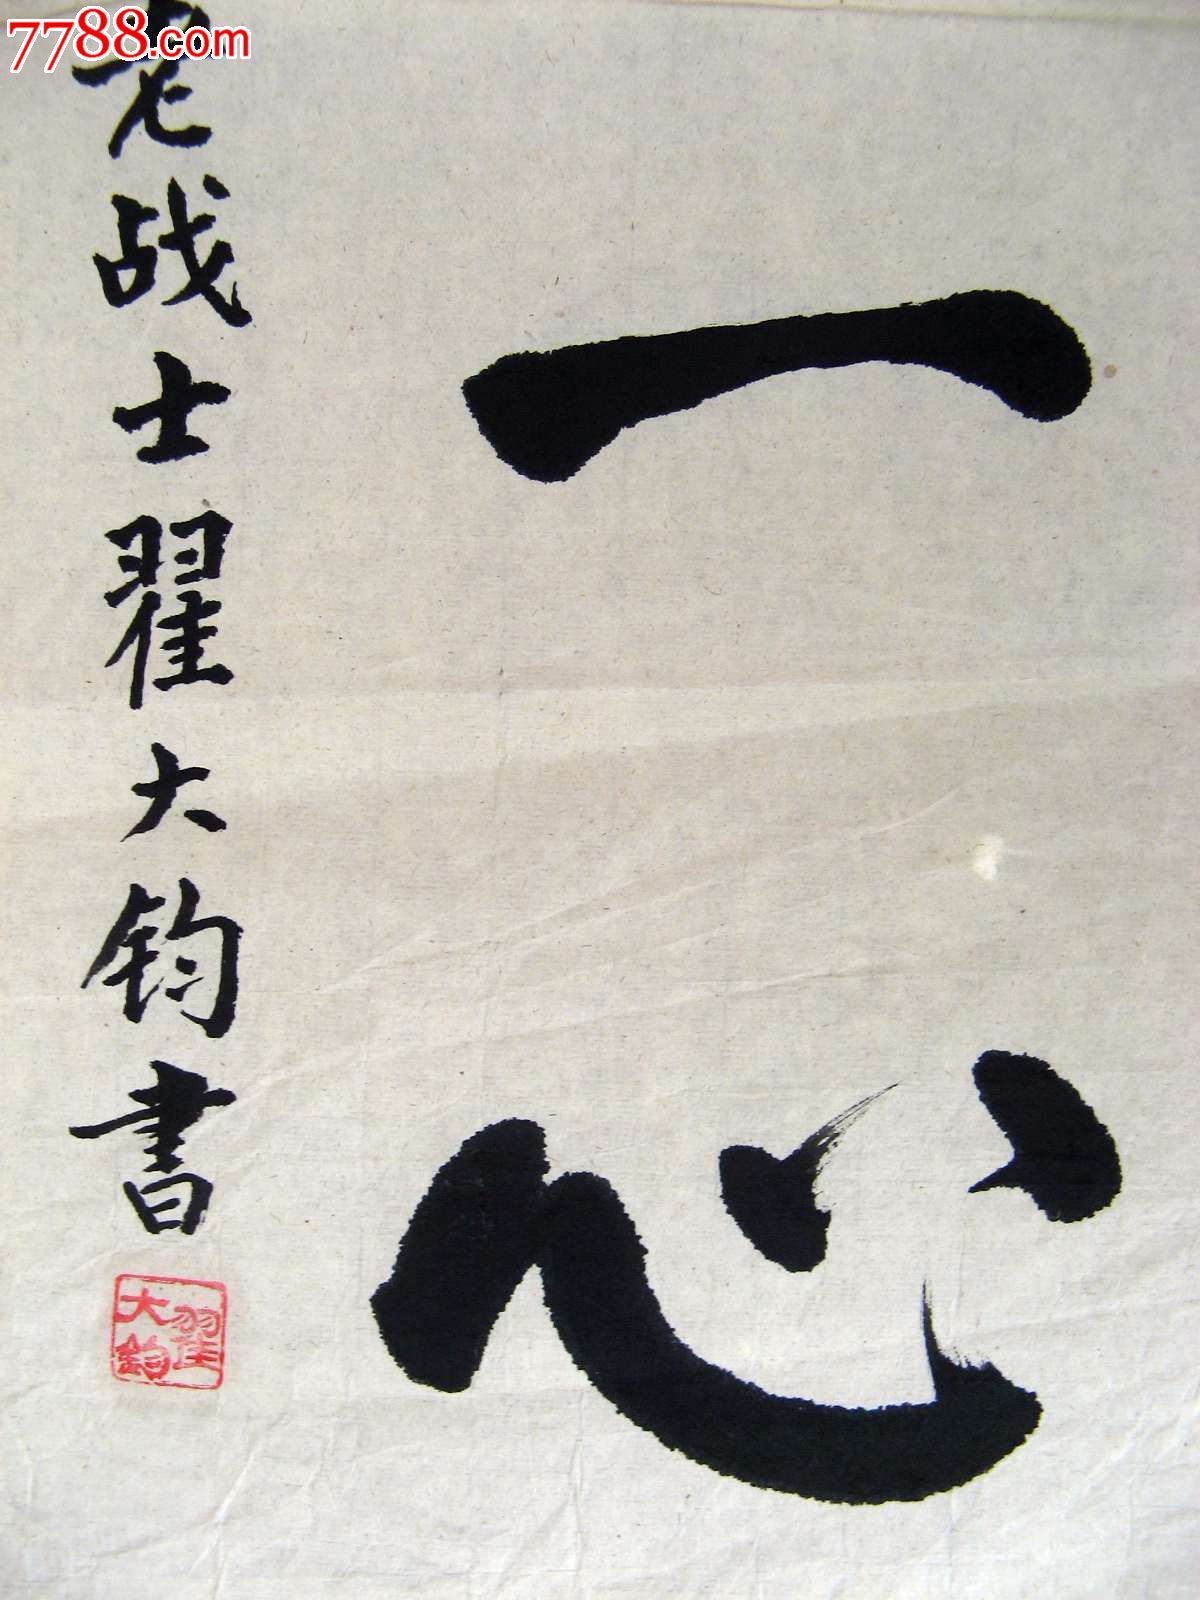 北京海淀区老书家二尺条幅楷书《万众一心》-书法原作